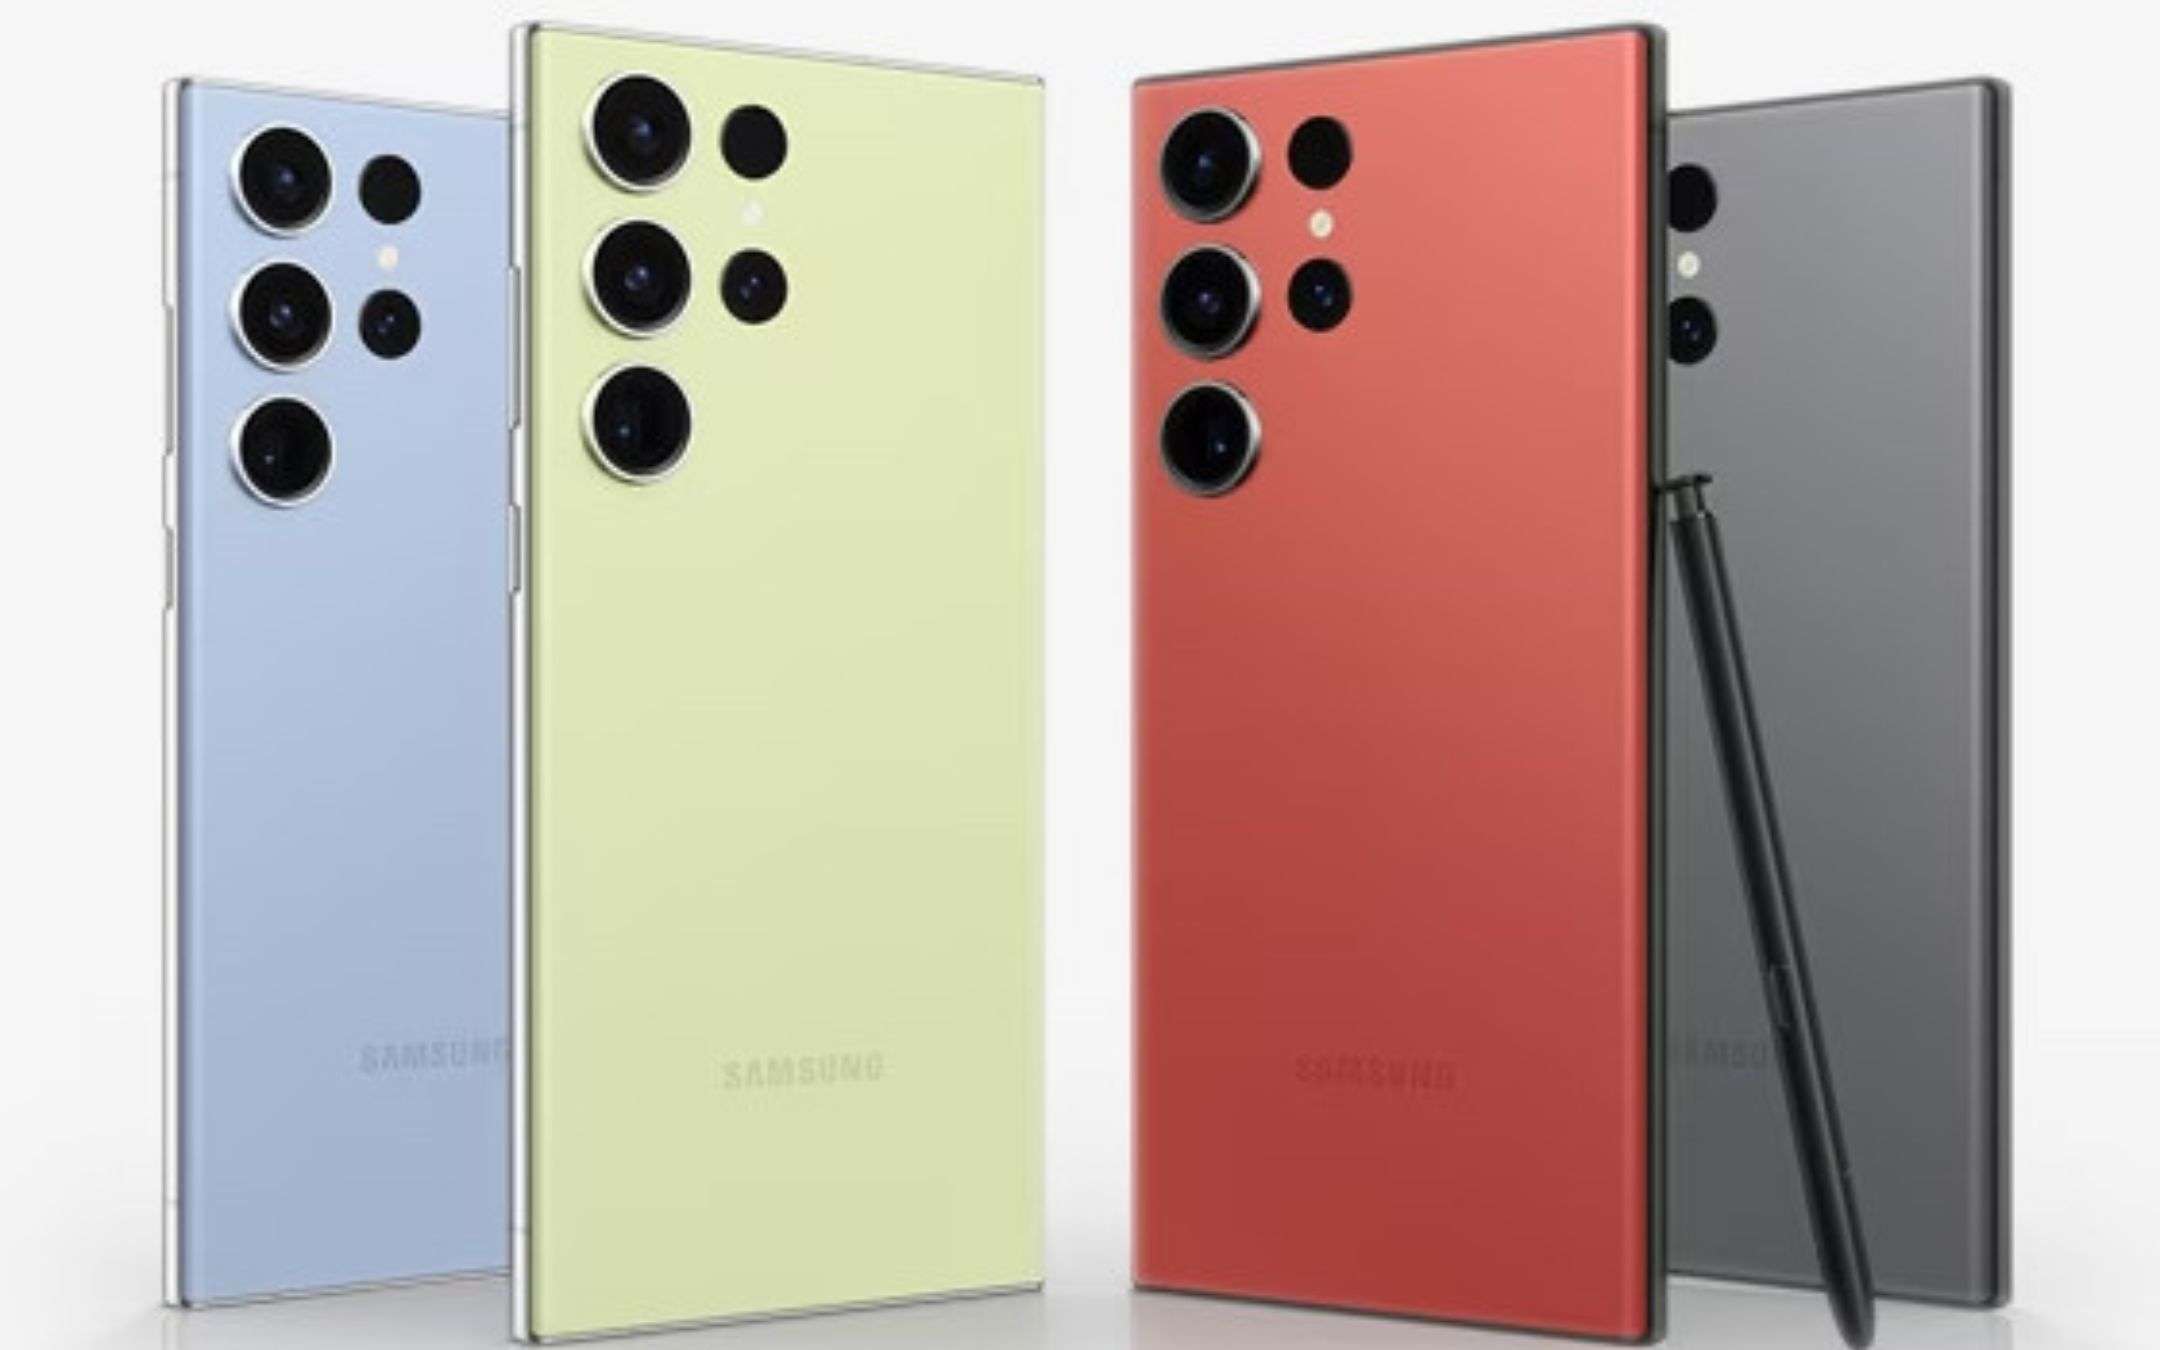 Samsung, il tablet top a rate senza interessi: offerta e prezzo finale